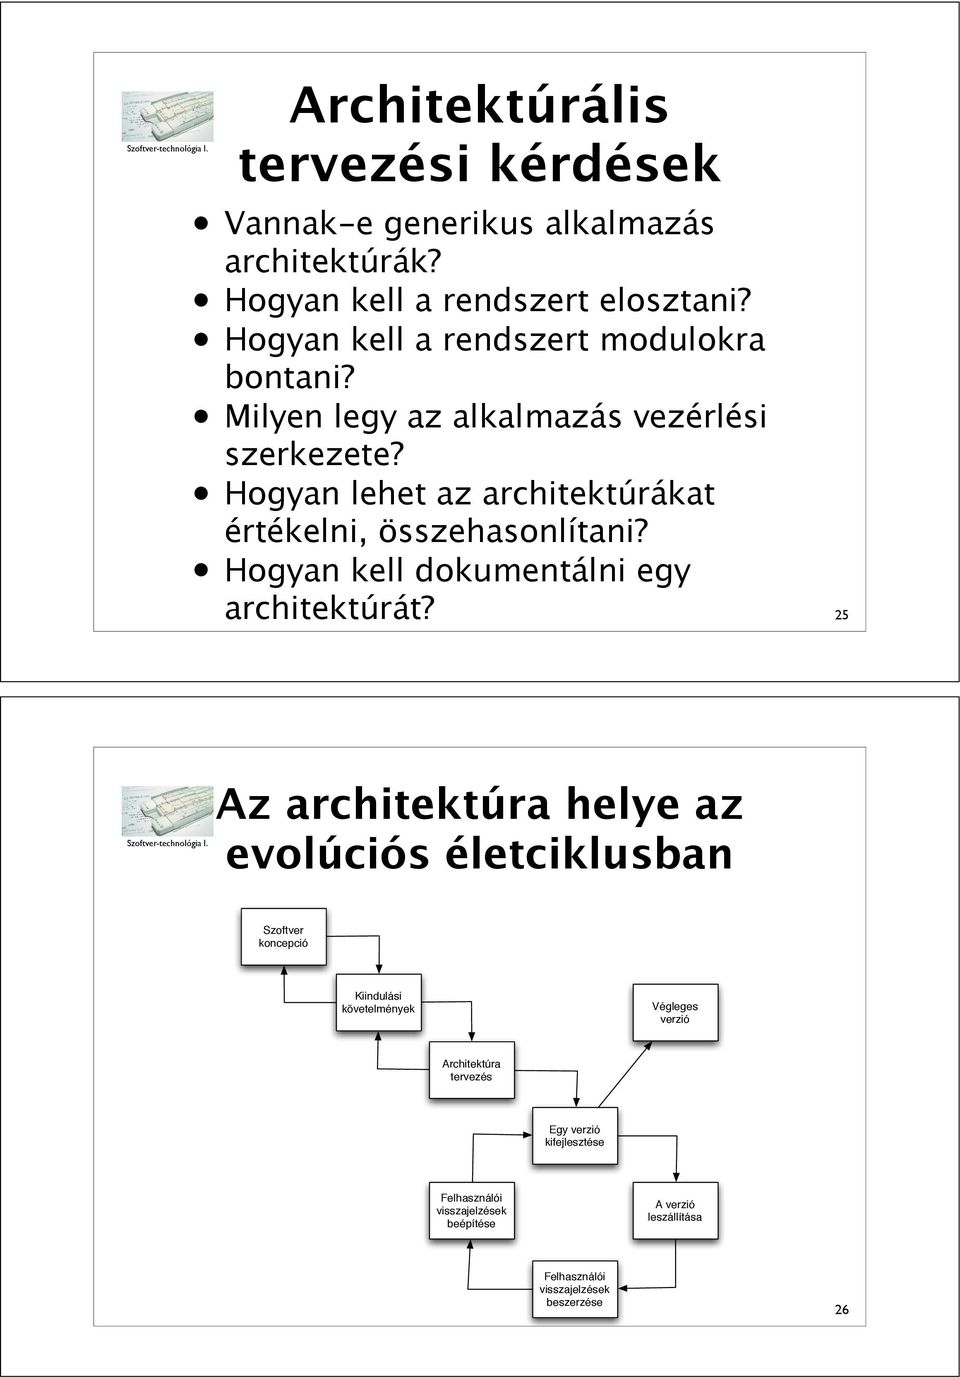 Hogyan lehet az architektúrákat értékelni, összehasonlítani? Hogyan kell dokumentálni egy architektúrát?